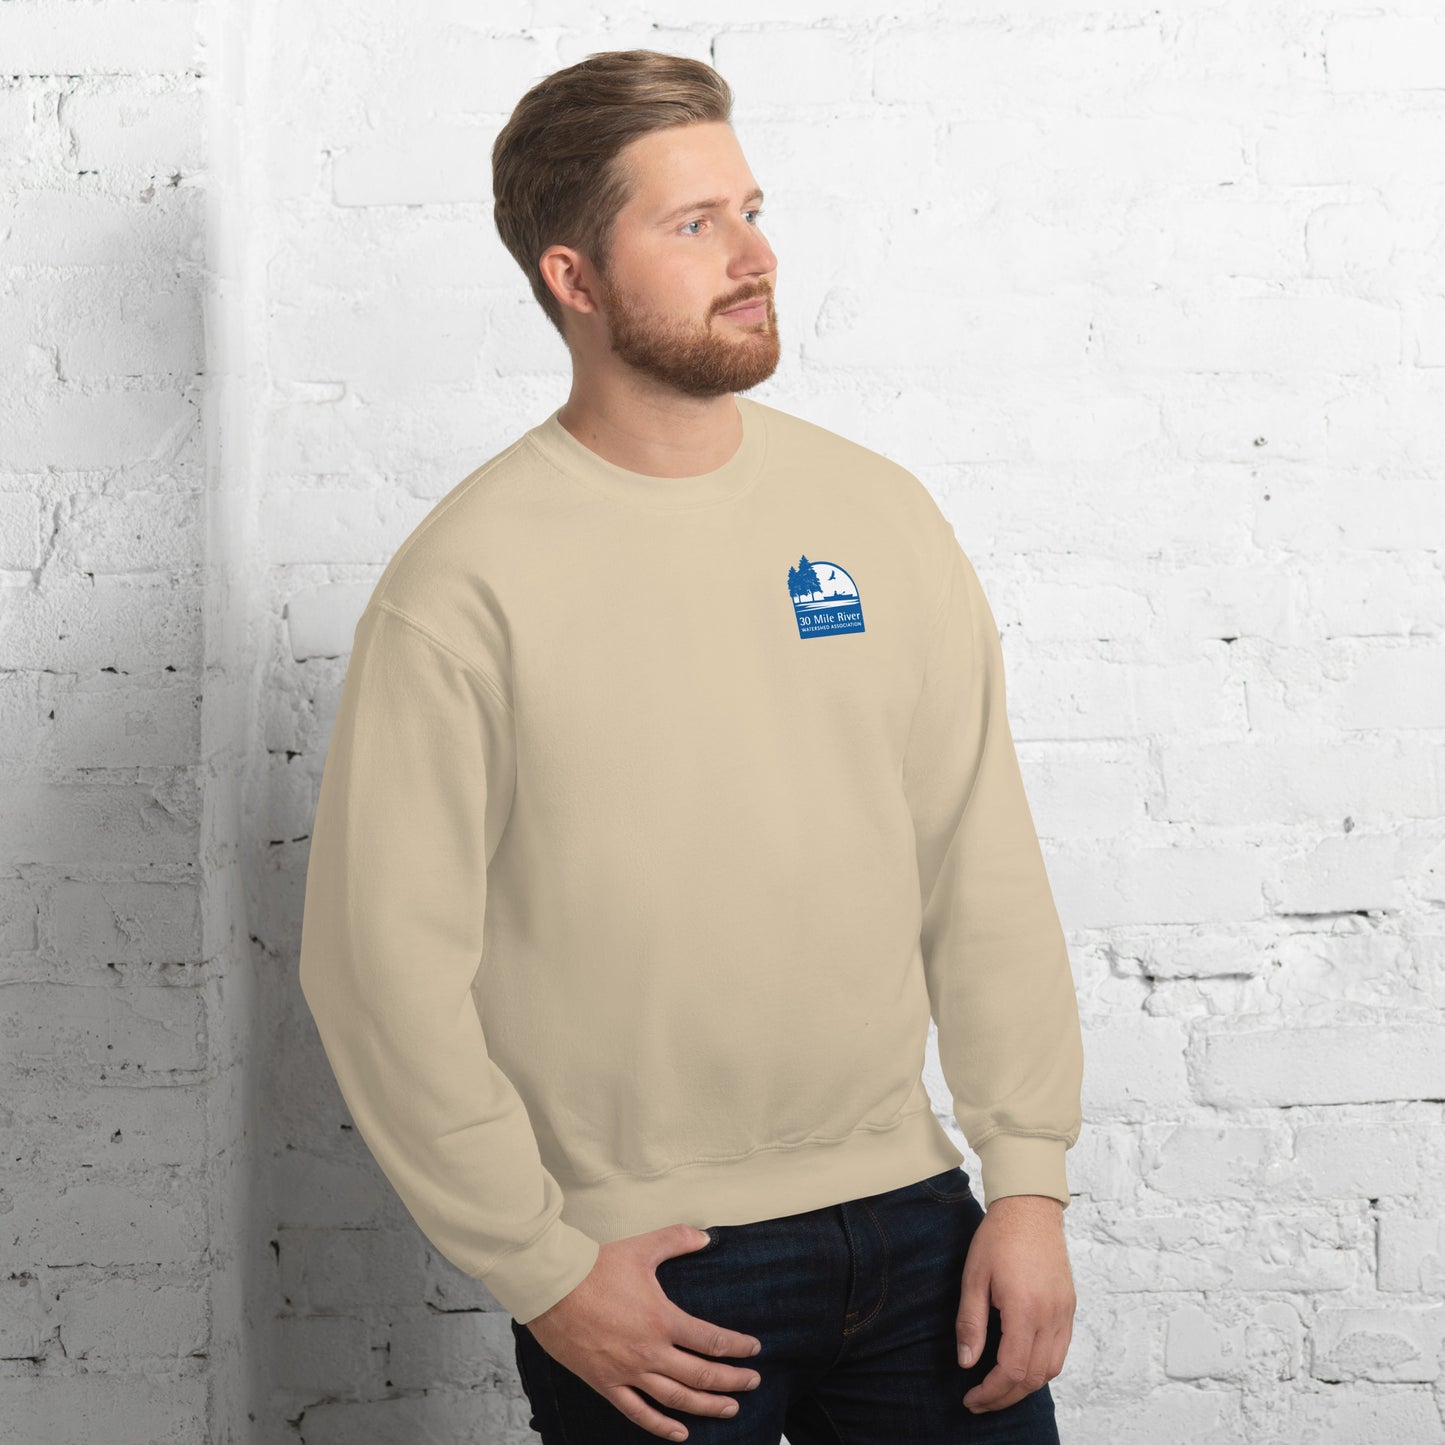 Adult Sweatshirt